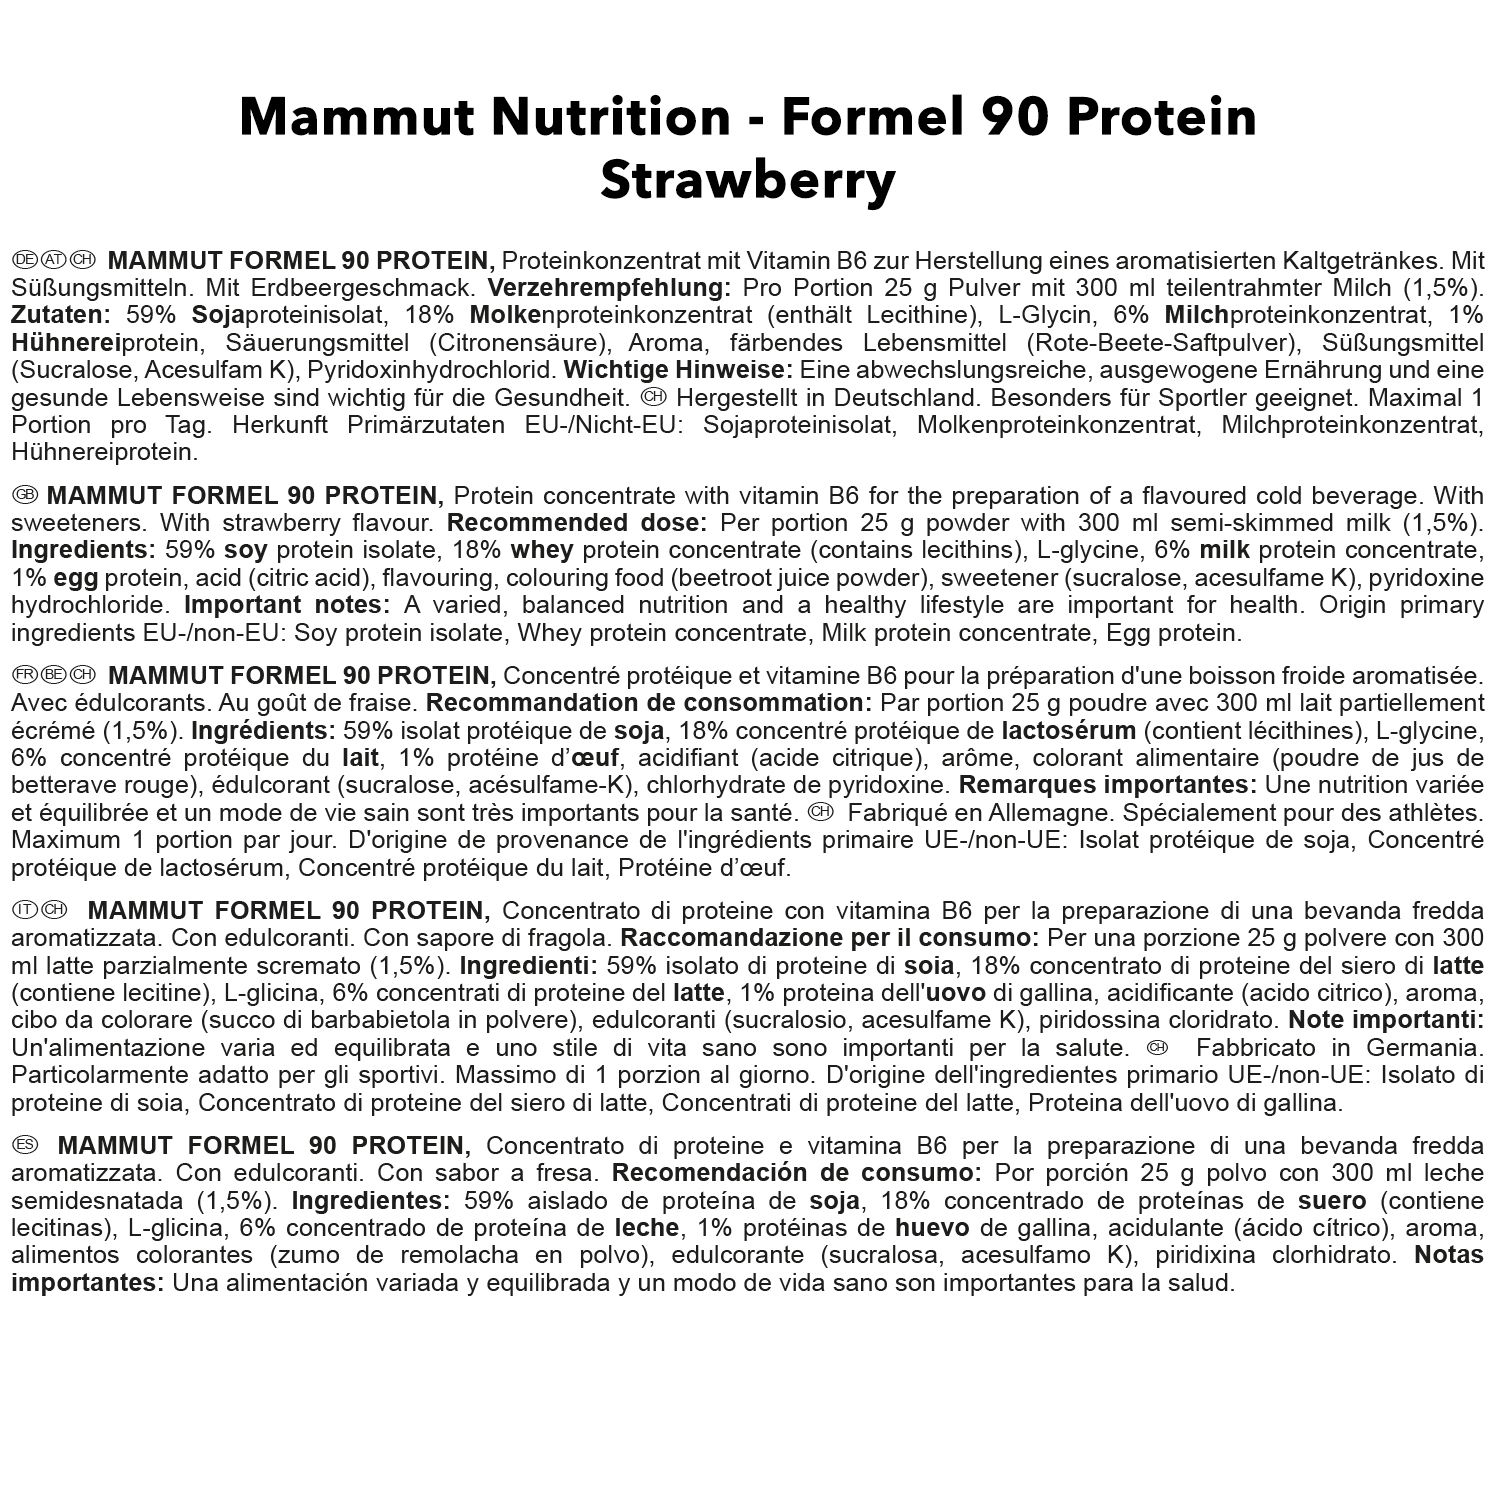 Mammut Formel 90 Protein, Erdbeere